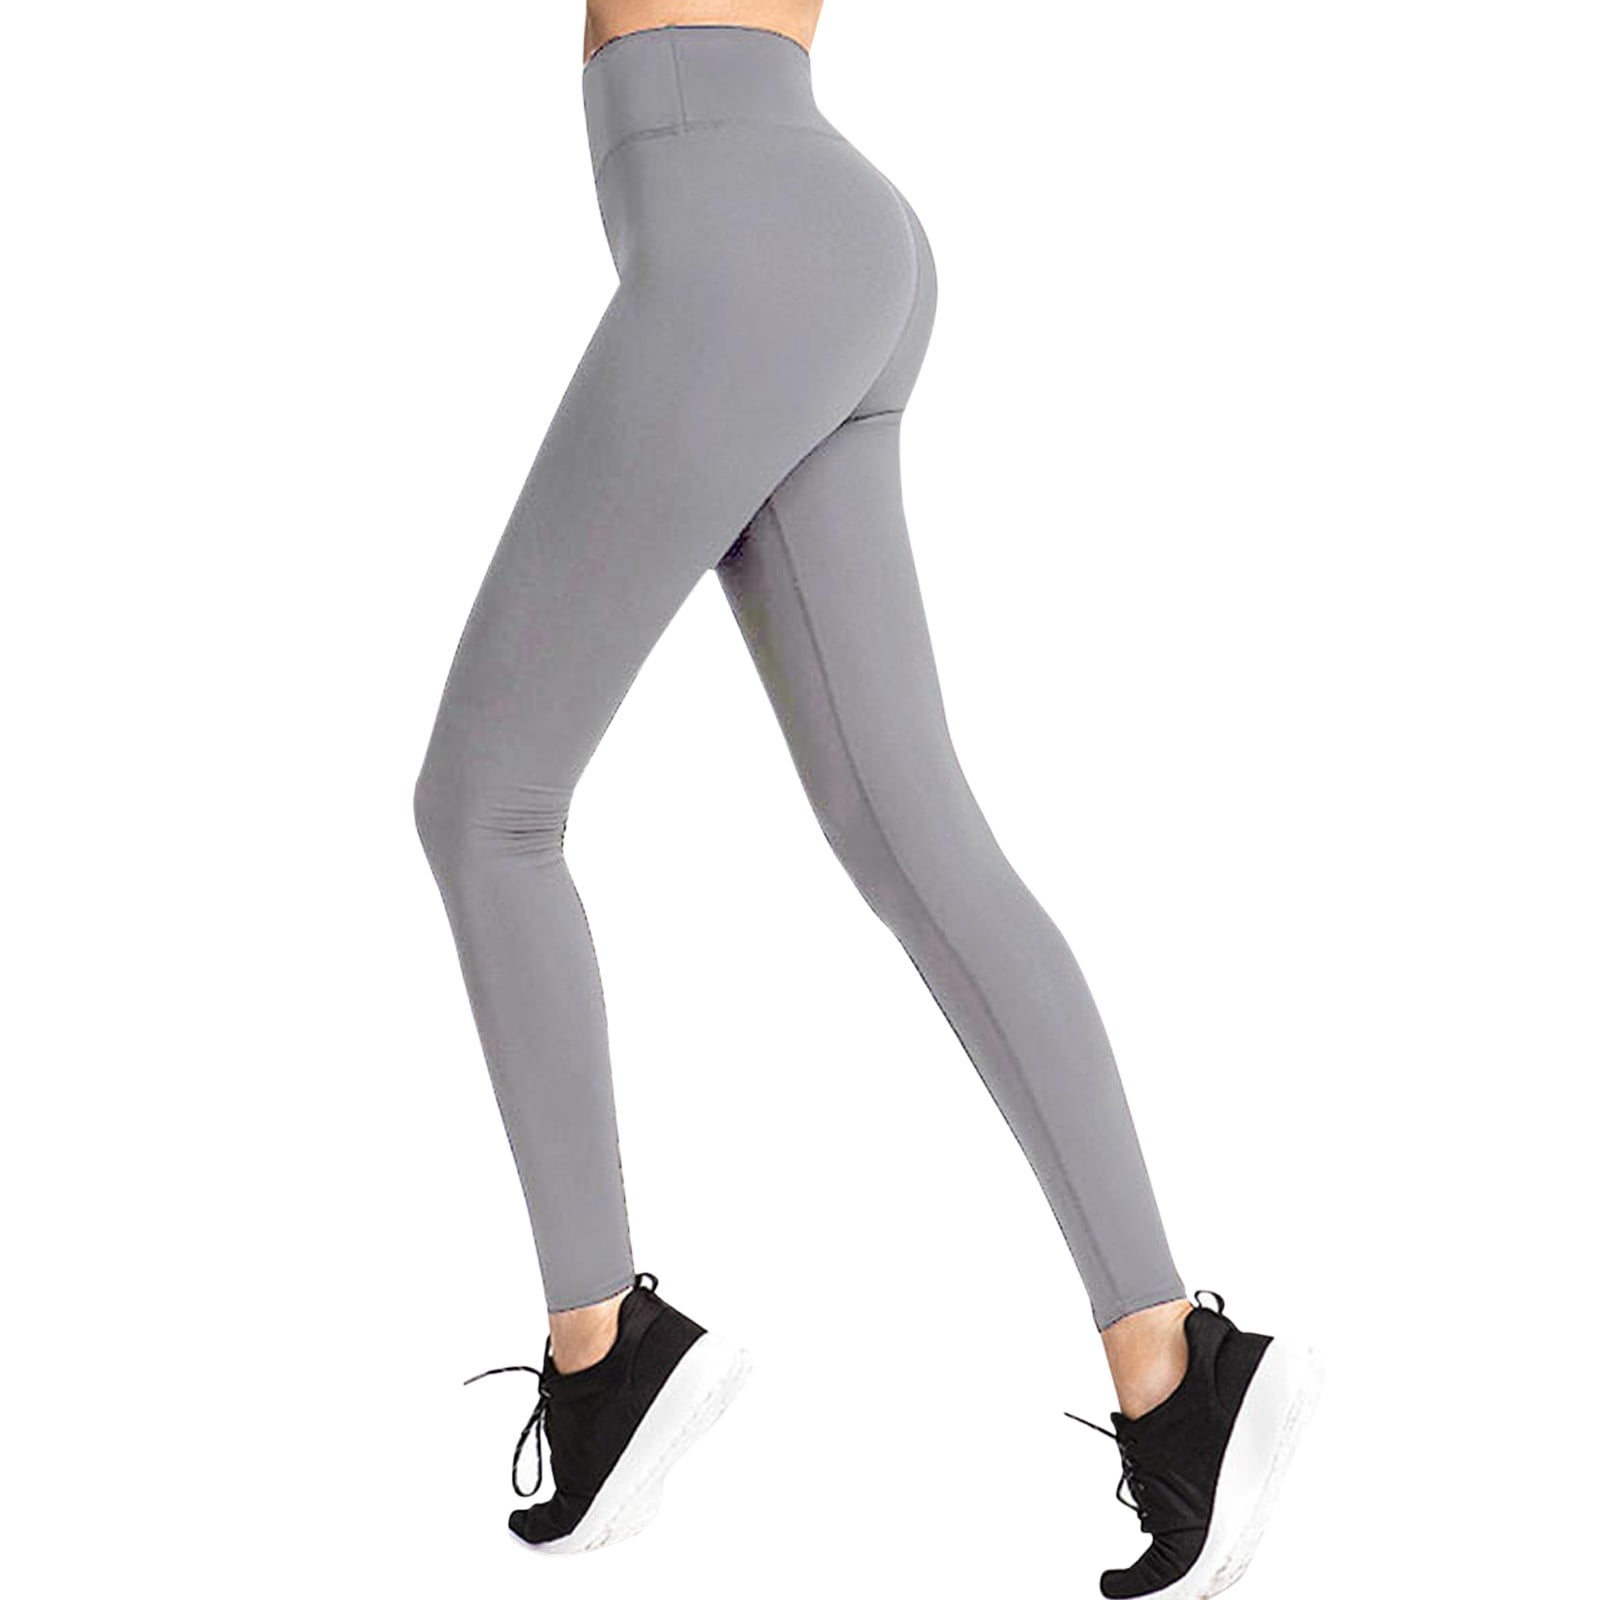 kpoplk Long Yoga Pants For Women Tall,Women's Flare Yoga Pants for Women,  High Waisted Buttery Soft Leggings(White,XL) 